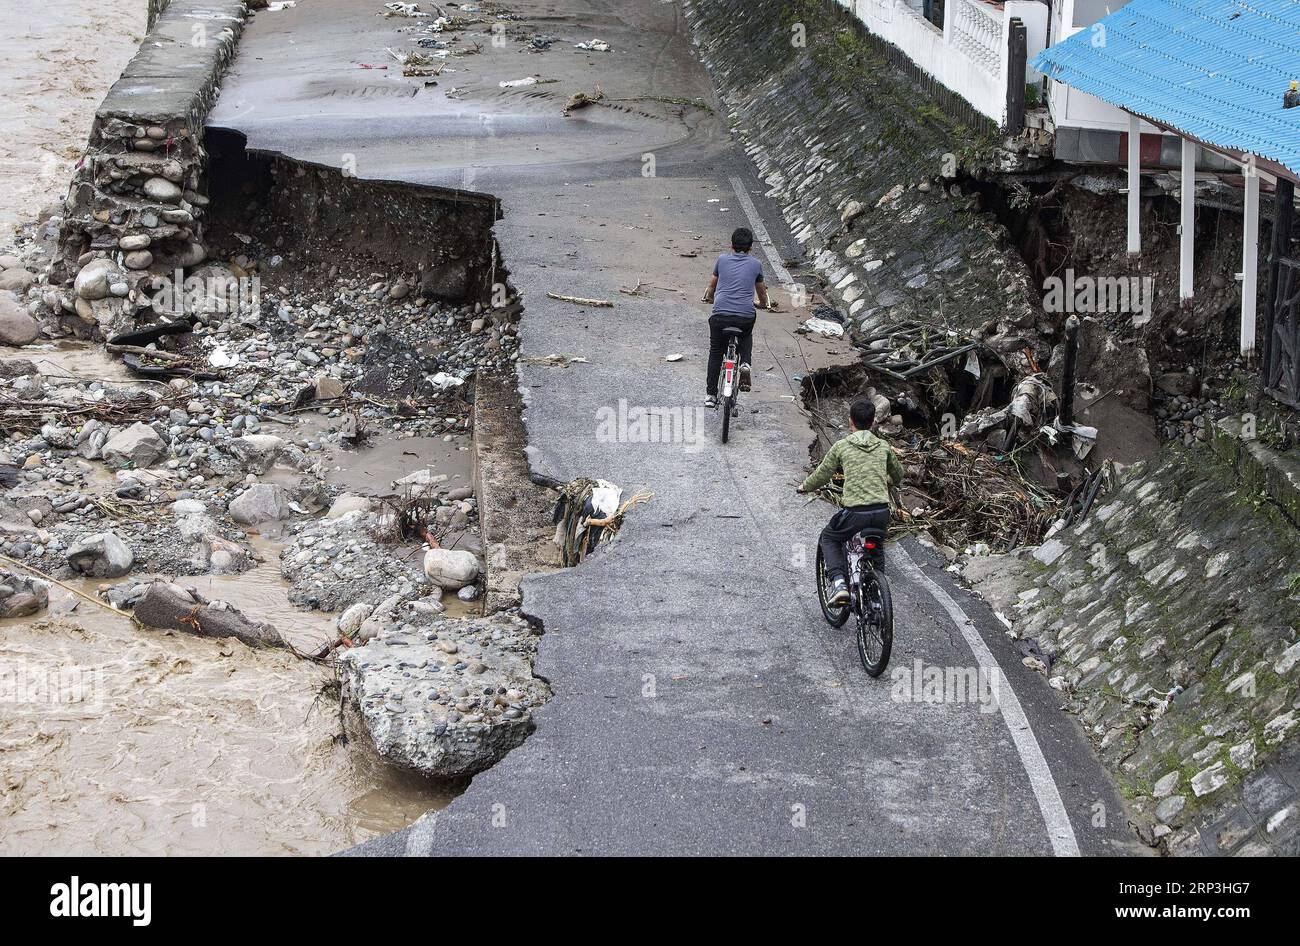 (181007) -- TONEKABON, 7 octobre 2018 -- des personnes roulent à vélo sur une route détruite après une inondation causée par de fortes pluies dans la ville de Tonekabon, dans la province de Mazandaran, au nord de l'Iran, le 6 octobre 2018. Les fortes pluies dans les régions nord et nord-ouest de l'Iran au cours des deux derniers jours ont coûté la vie à au moins sept personnes, a rapporté samedi l'agence de presse semi-officielle ISNA. (dtf) IRAN-TONEKABON-FLOOD AhmadxHalabisaz PUBLICATIONxNOTxINxCHN Banque D'Images